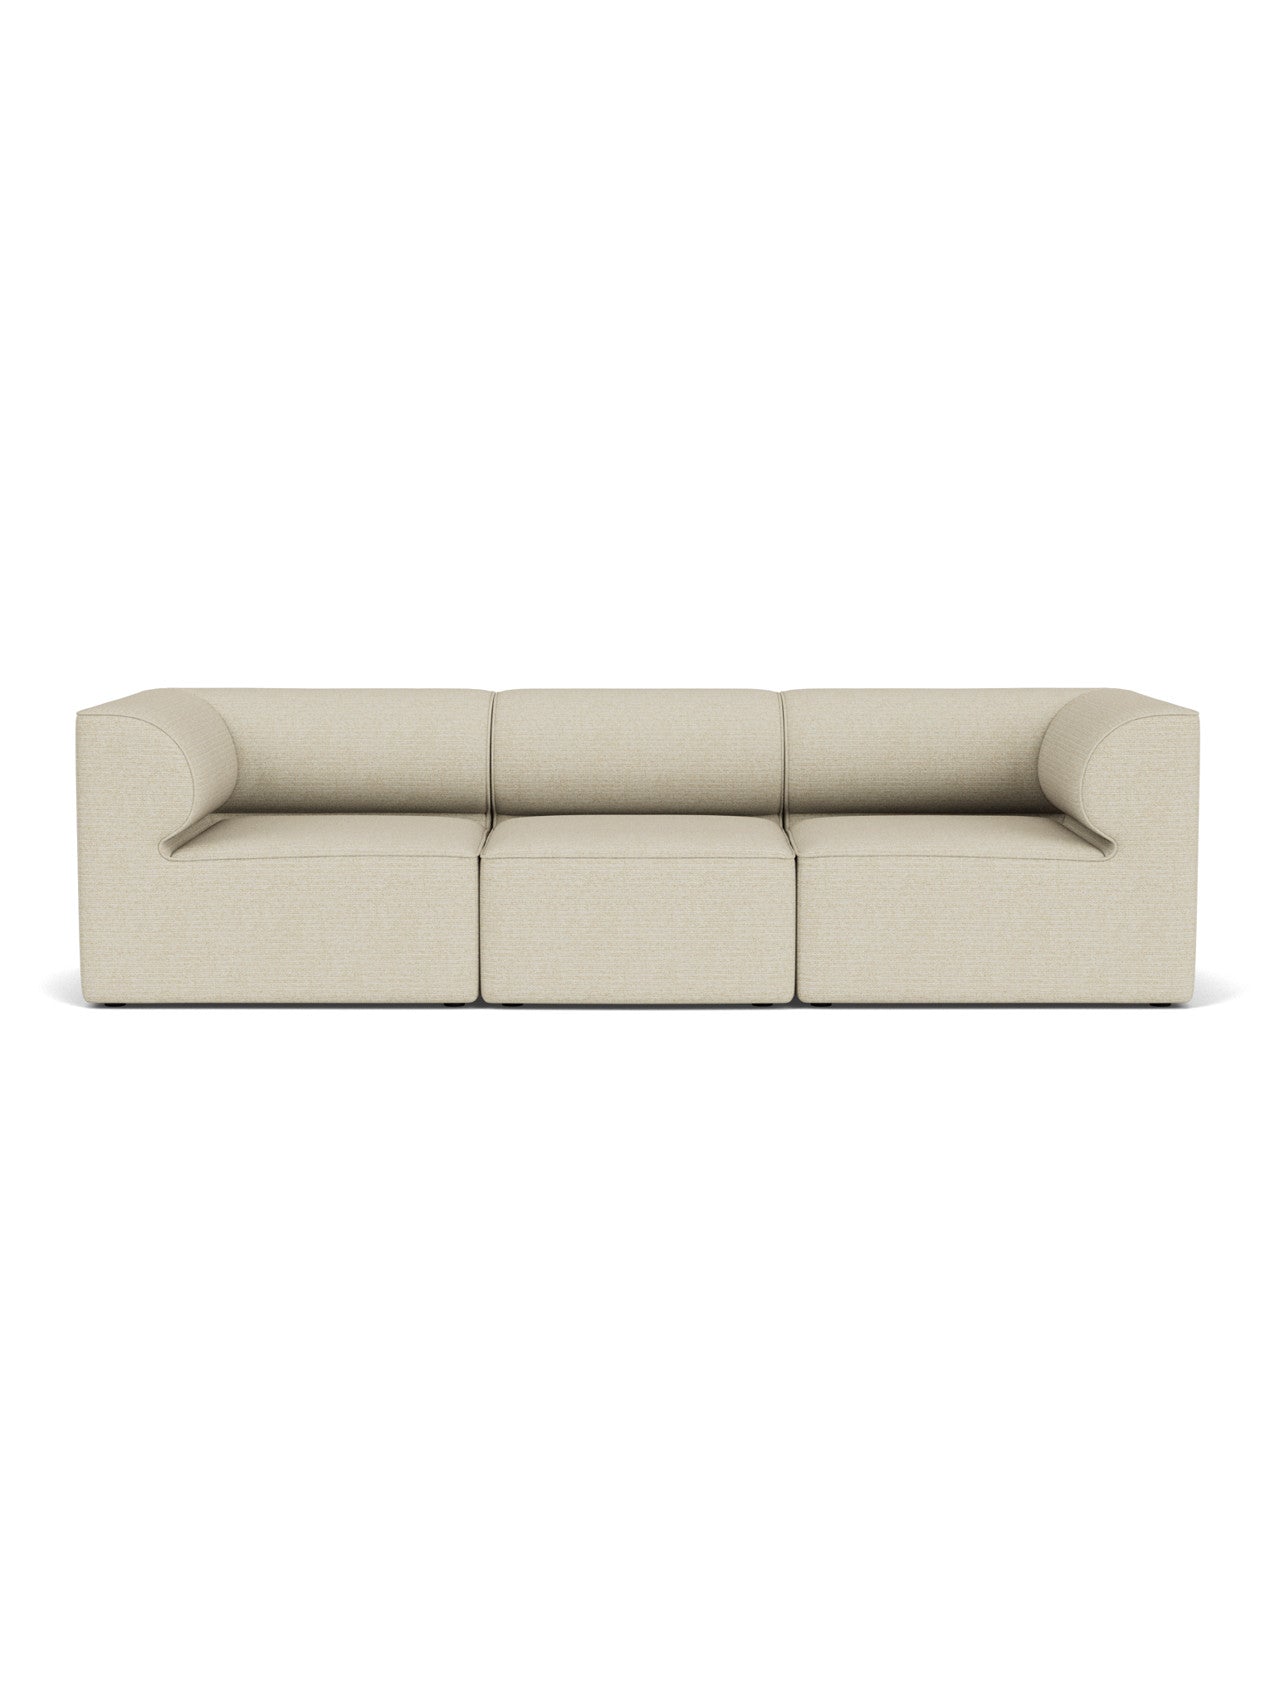 Eave Modular Sofa, 96, 3-Seater, Configuration 2